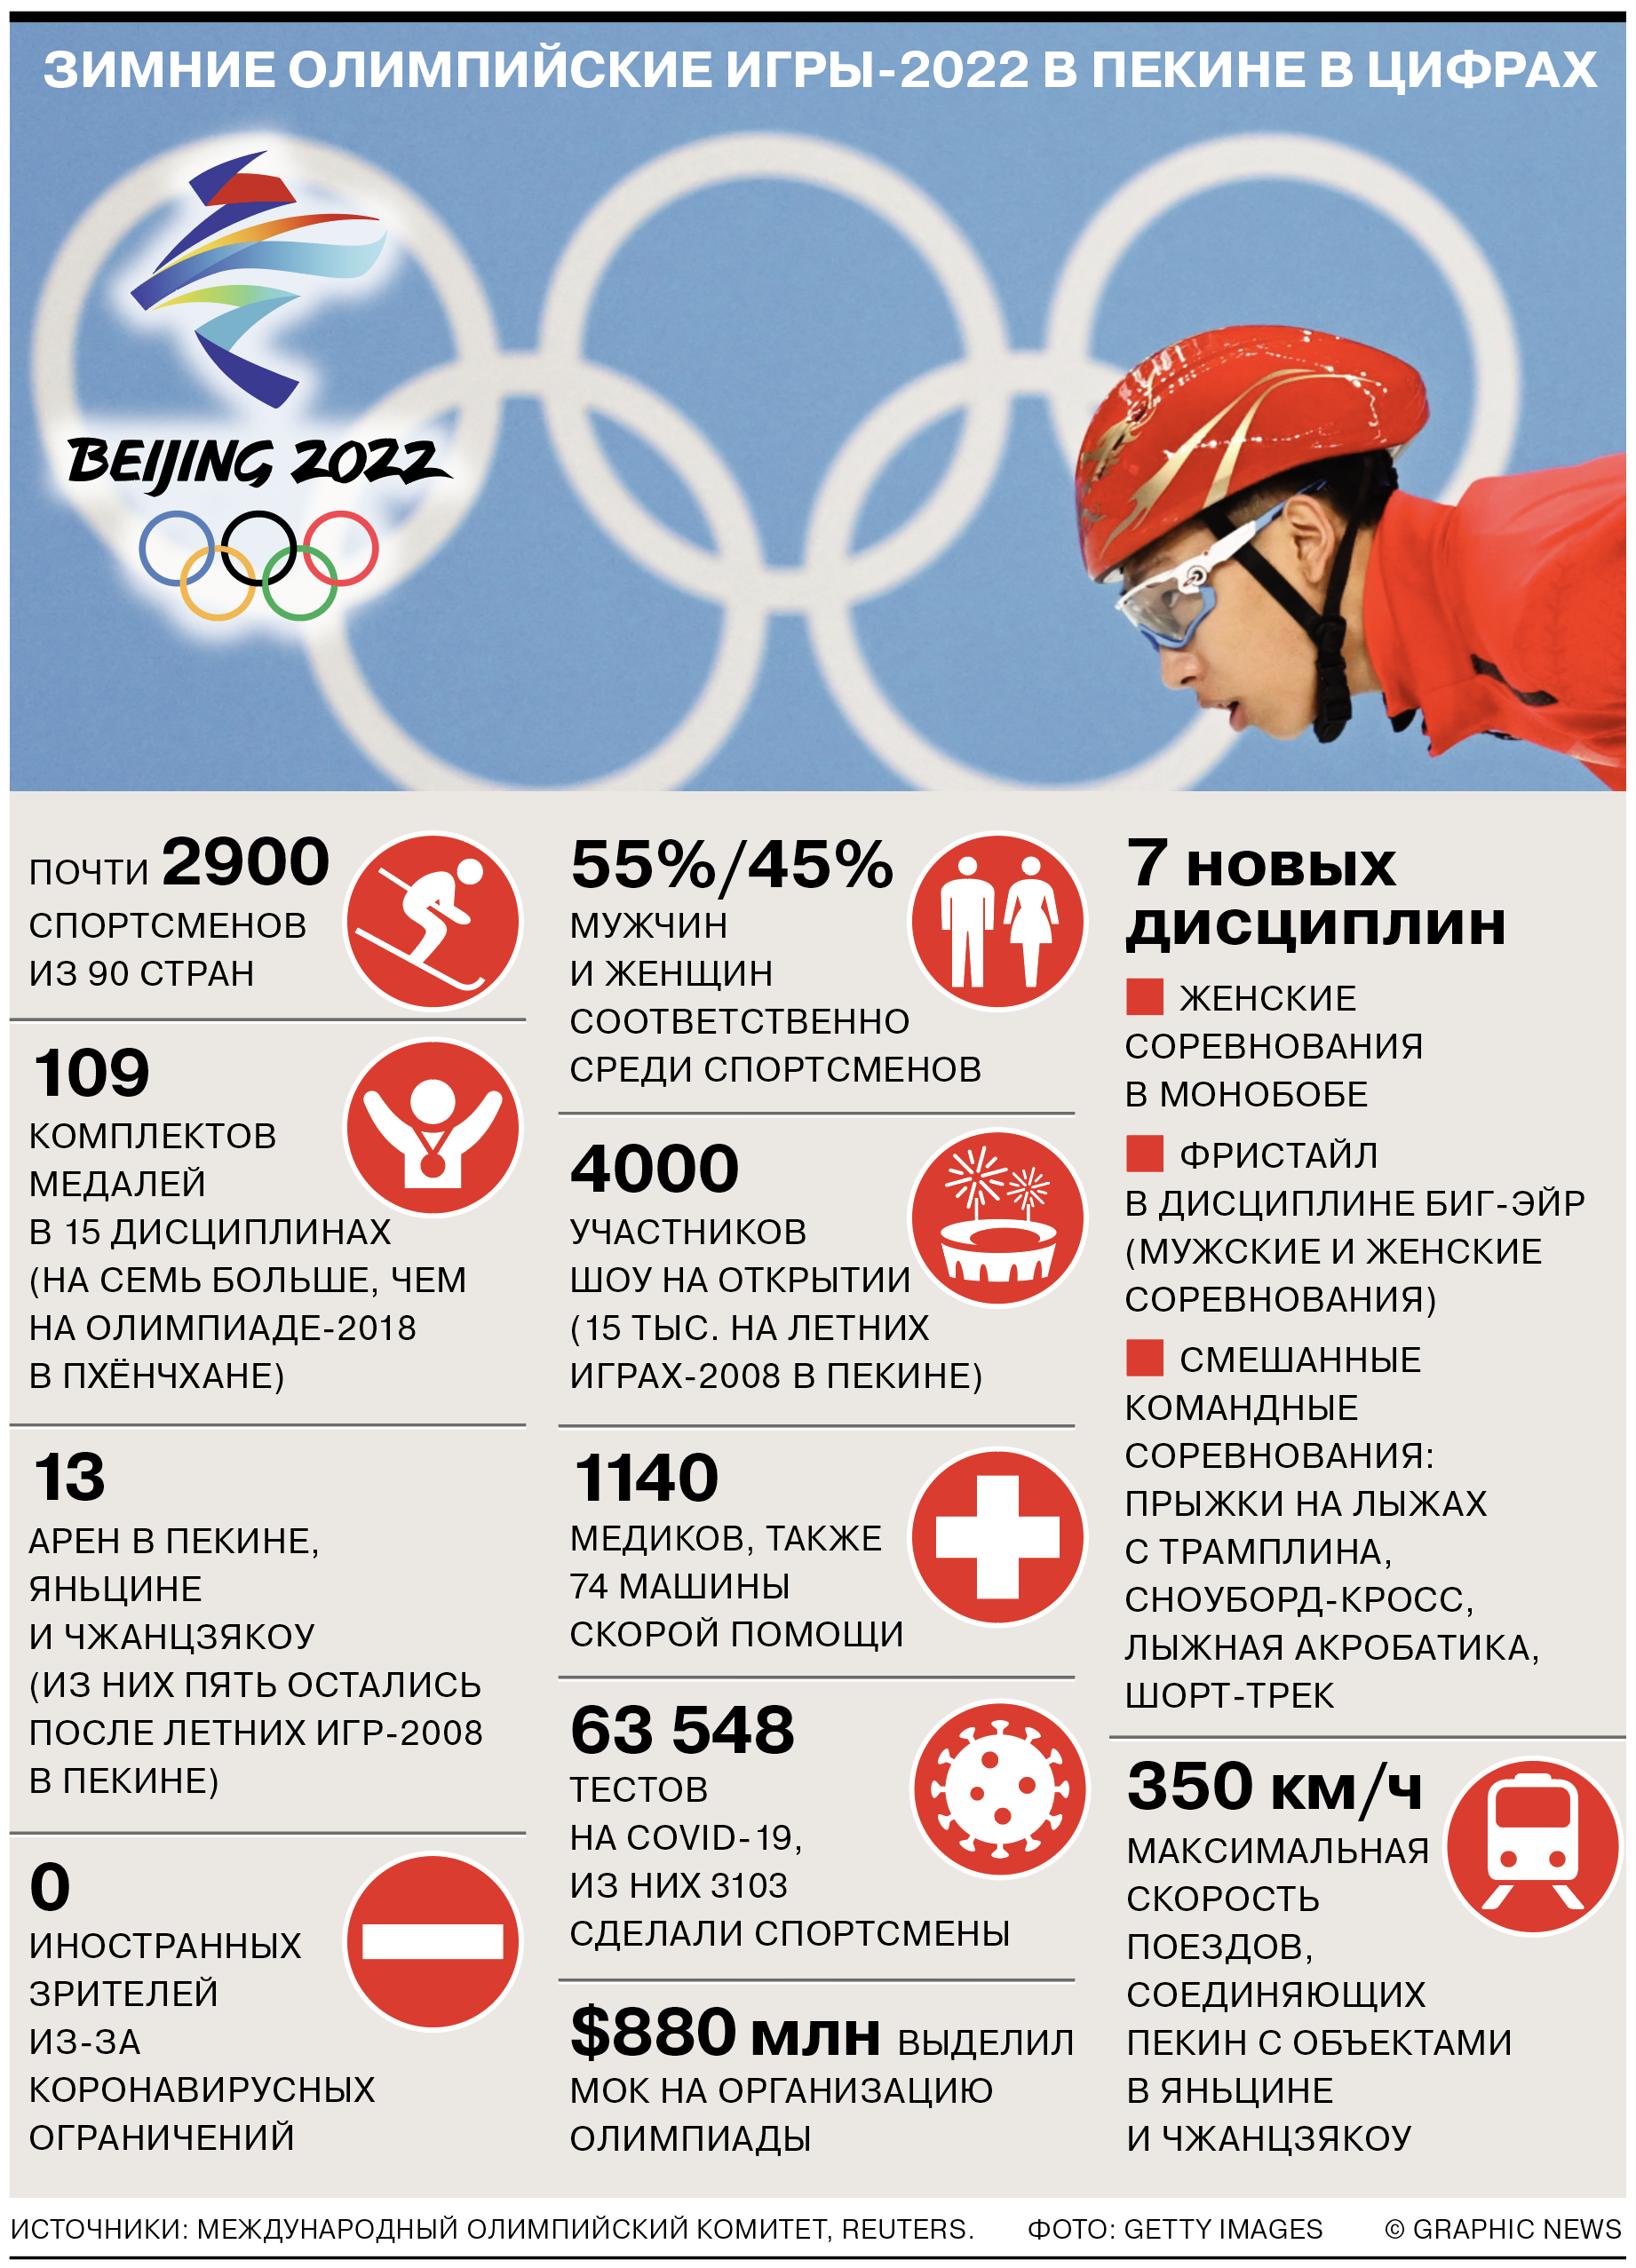 2,9 тыс. спортсменов, 109 комплектов наград, 7 новых дисциплин и другие цифры Олимпиады-2022 в Пекине